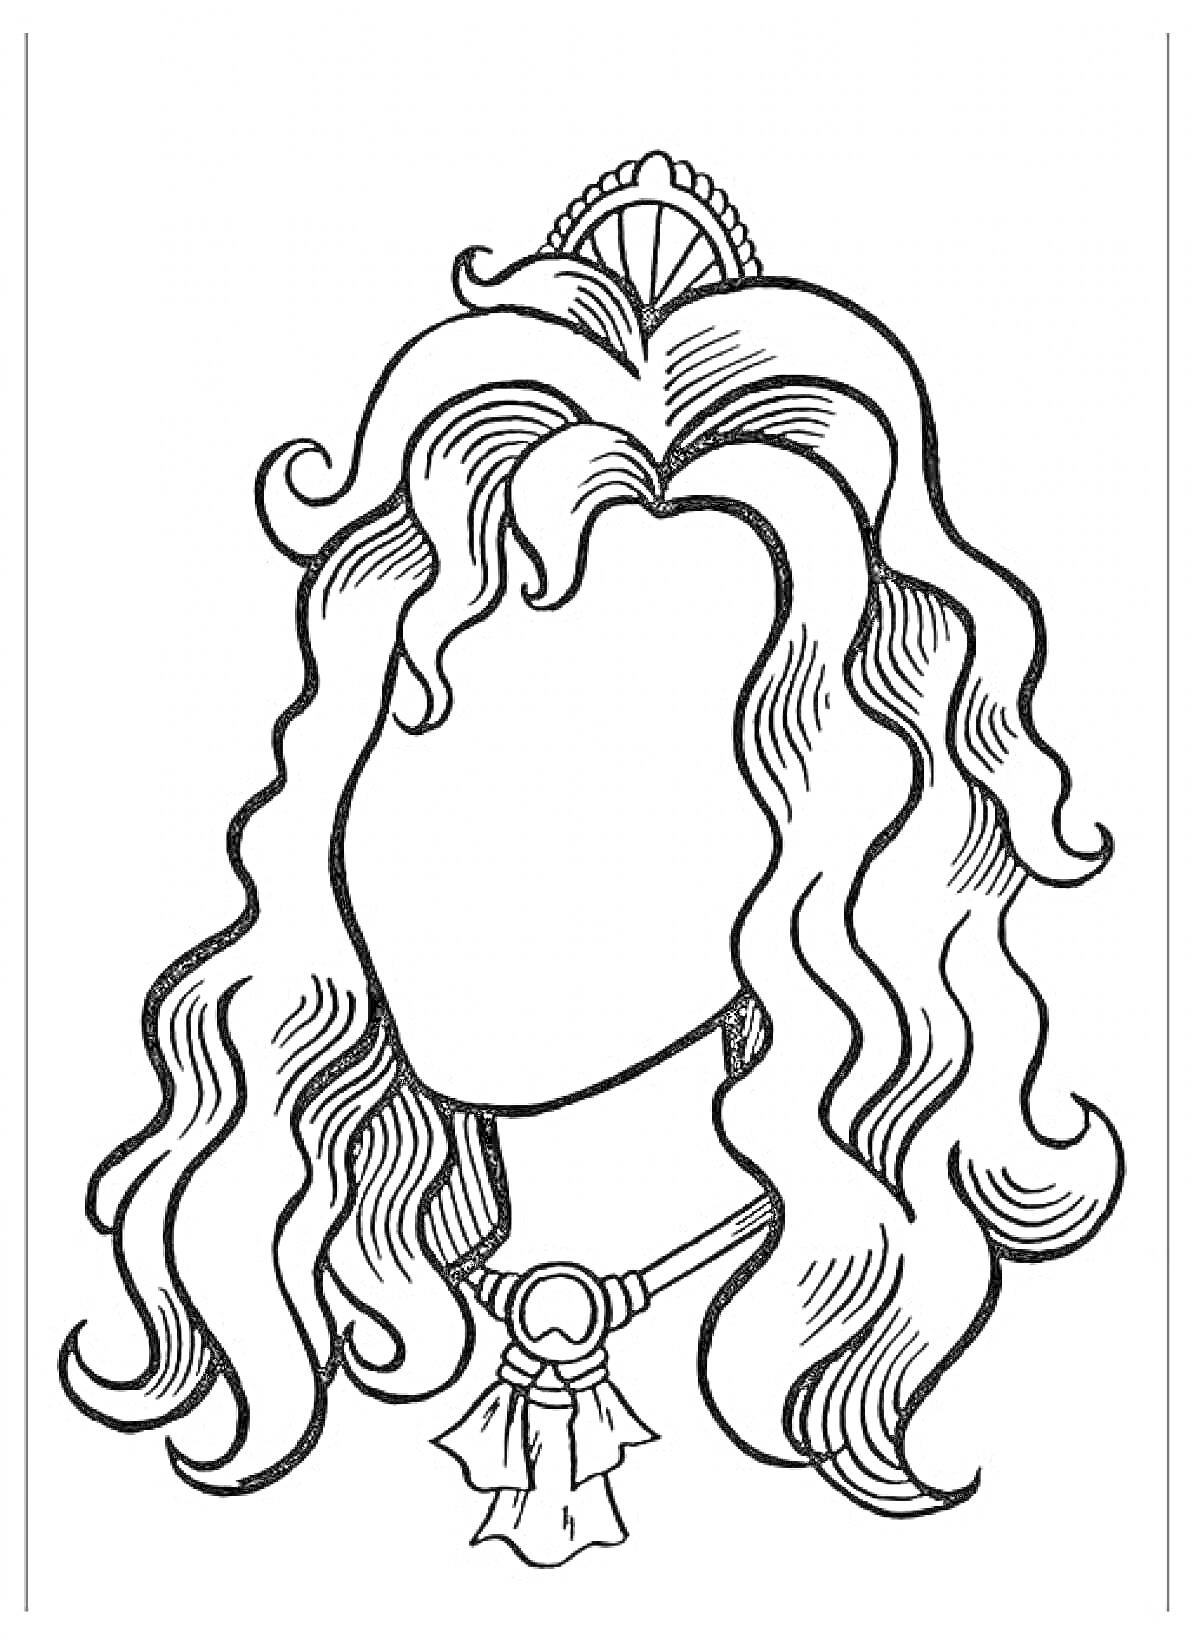 Раскраска Портрет мамы с длинными волнистыми волосами и украшением в виде короны на голове, ожерельем с бантом на шее